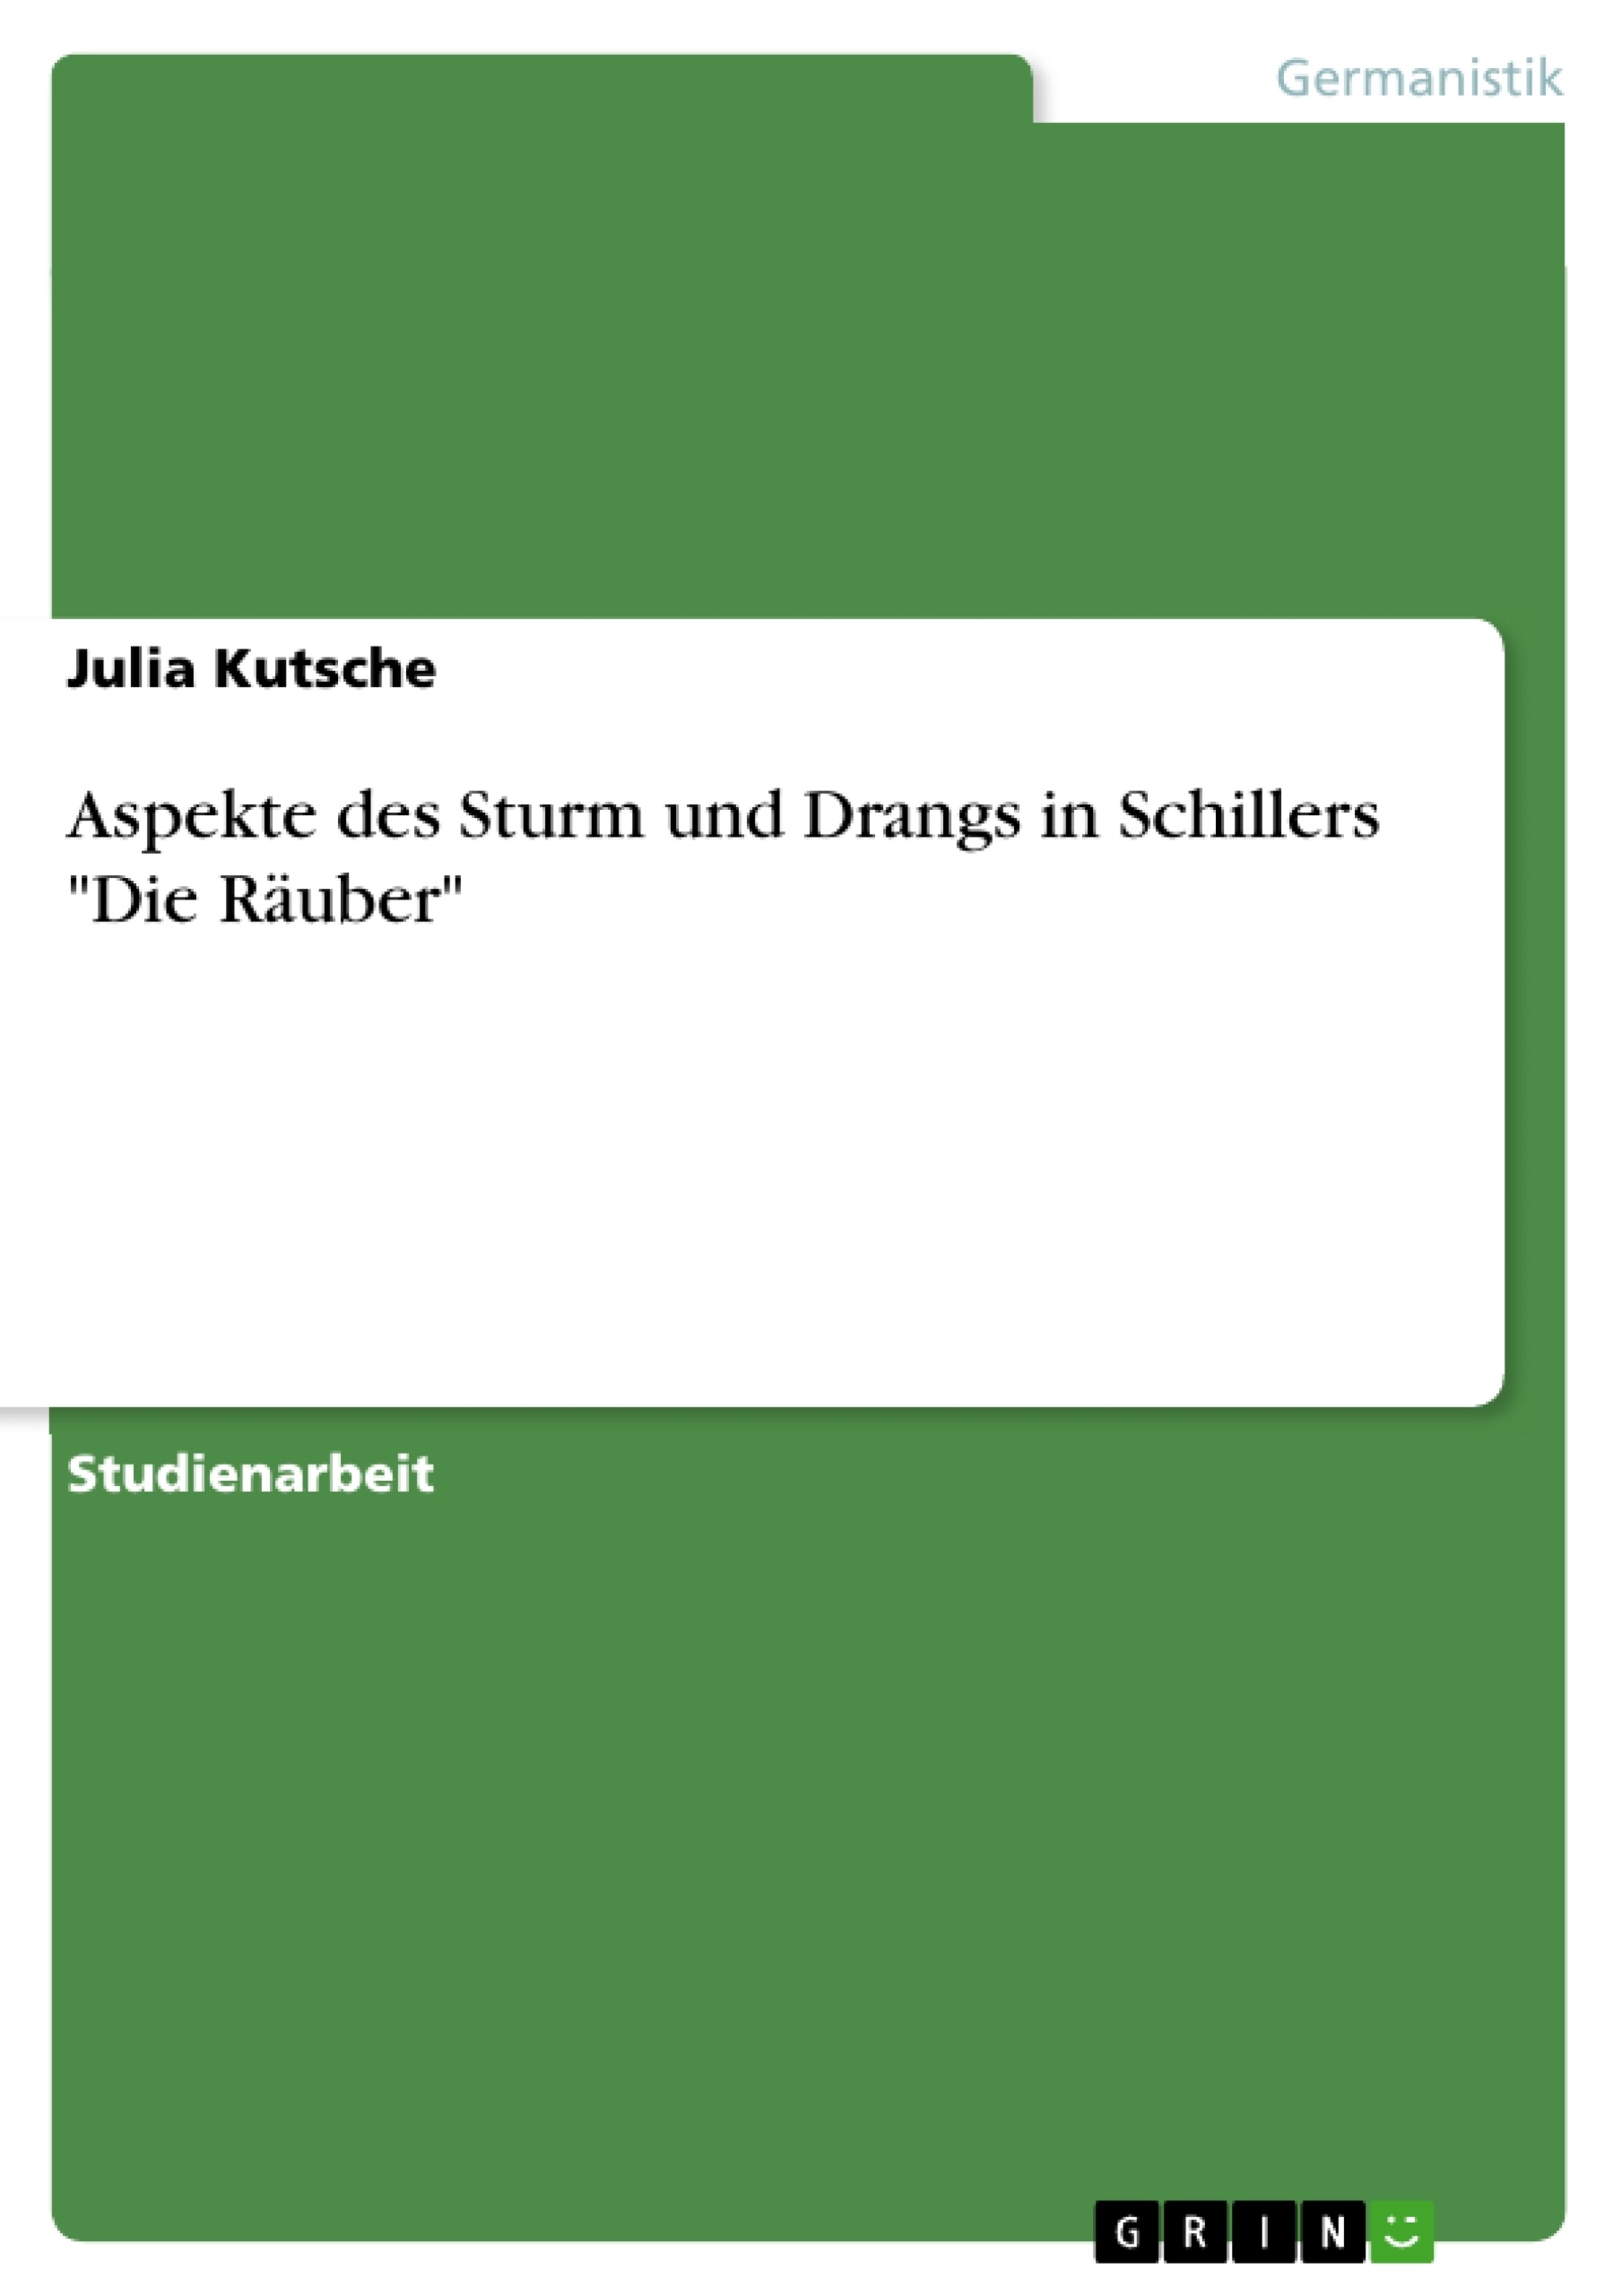 Título: Aspekte des Sturm und Drangs in Schillers "Die Räuber"